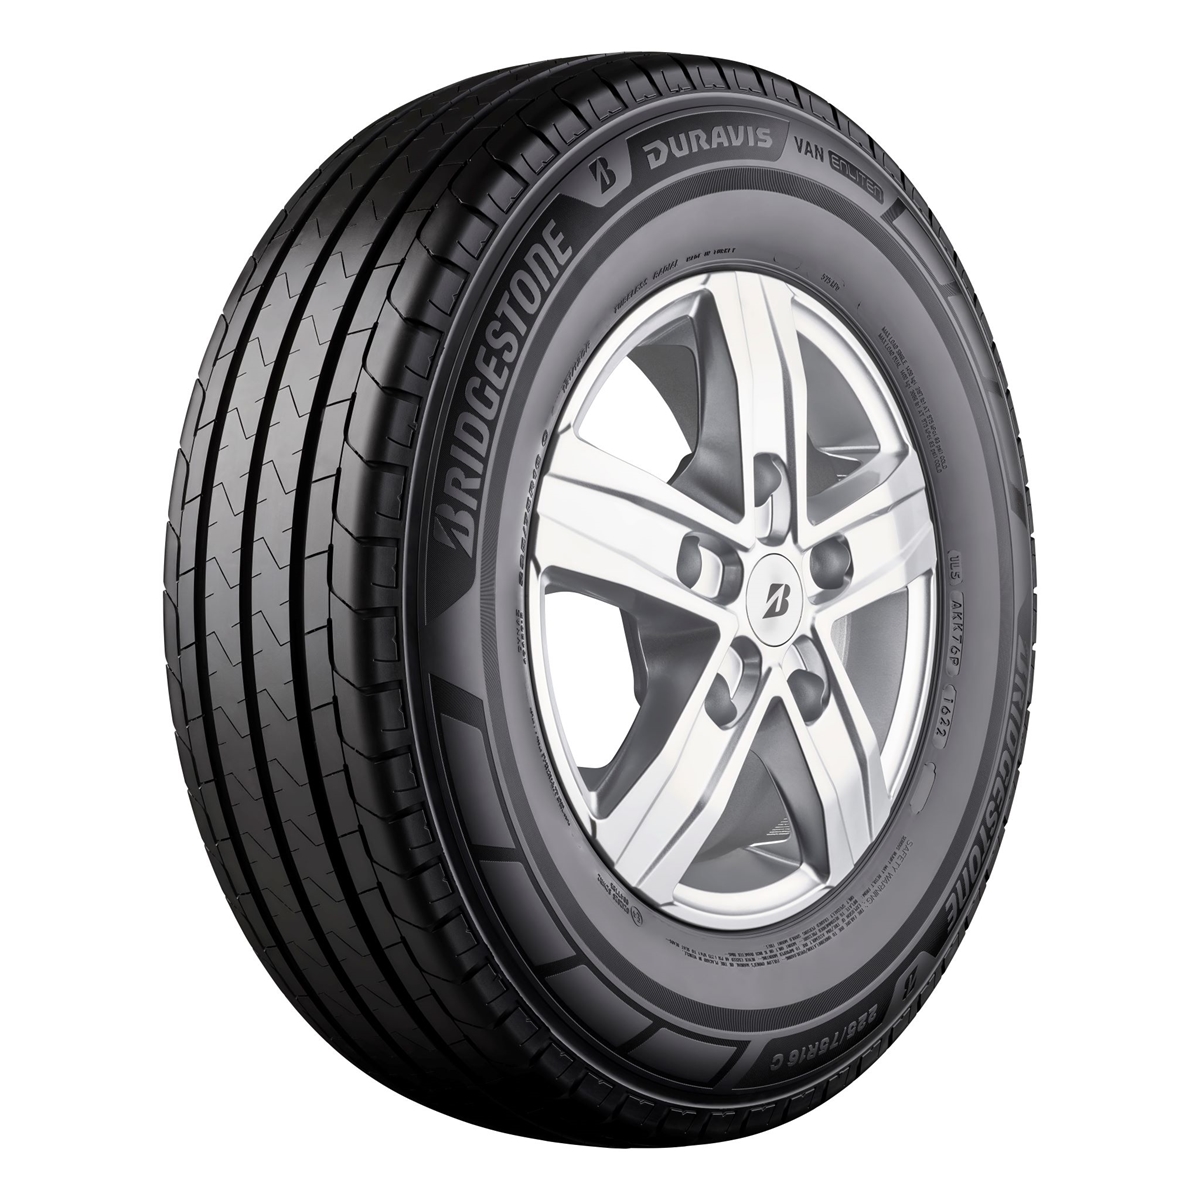 Нова бусова гума на Bridgestone за максимална бизнес ефективност